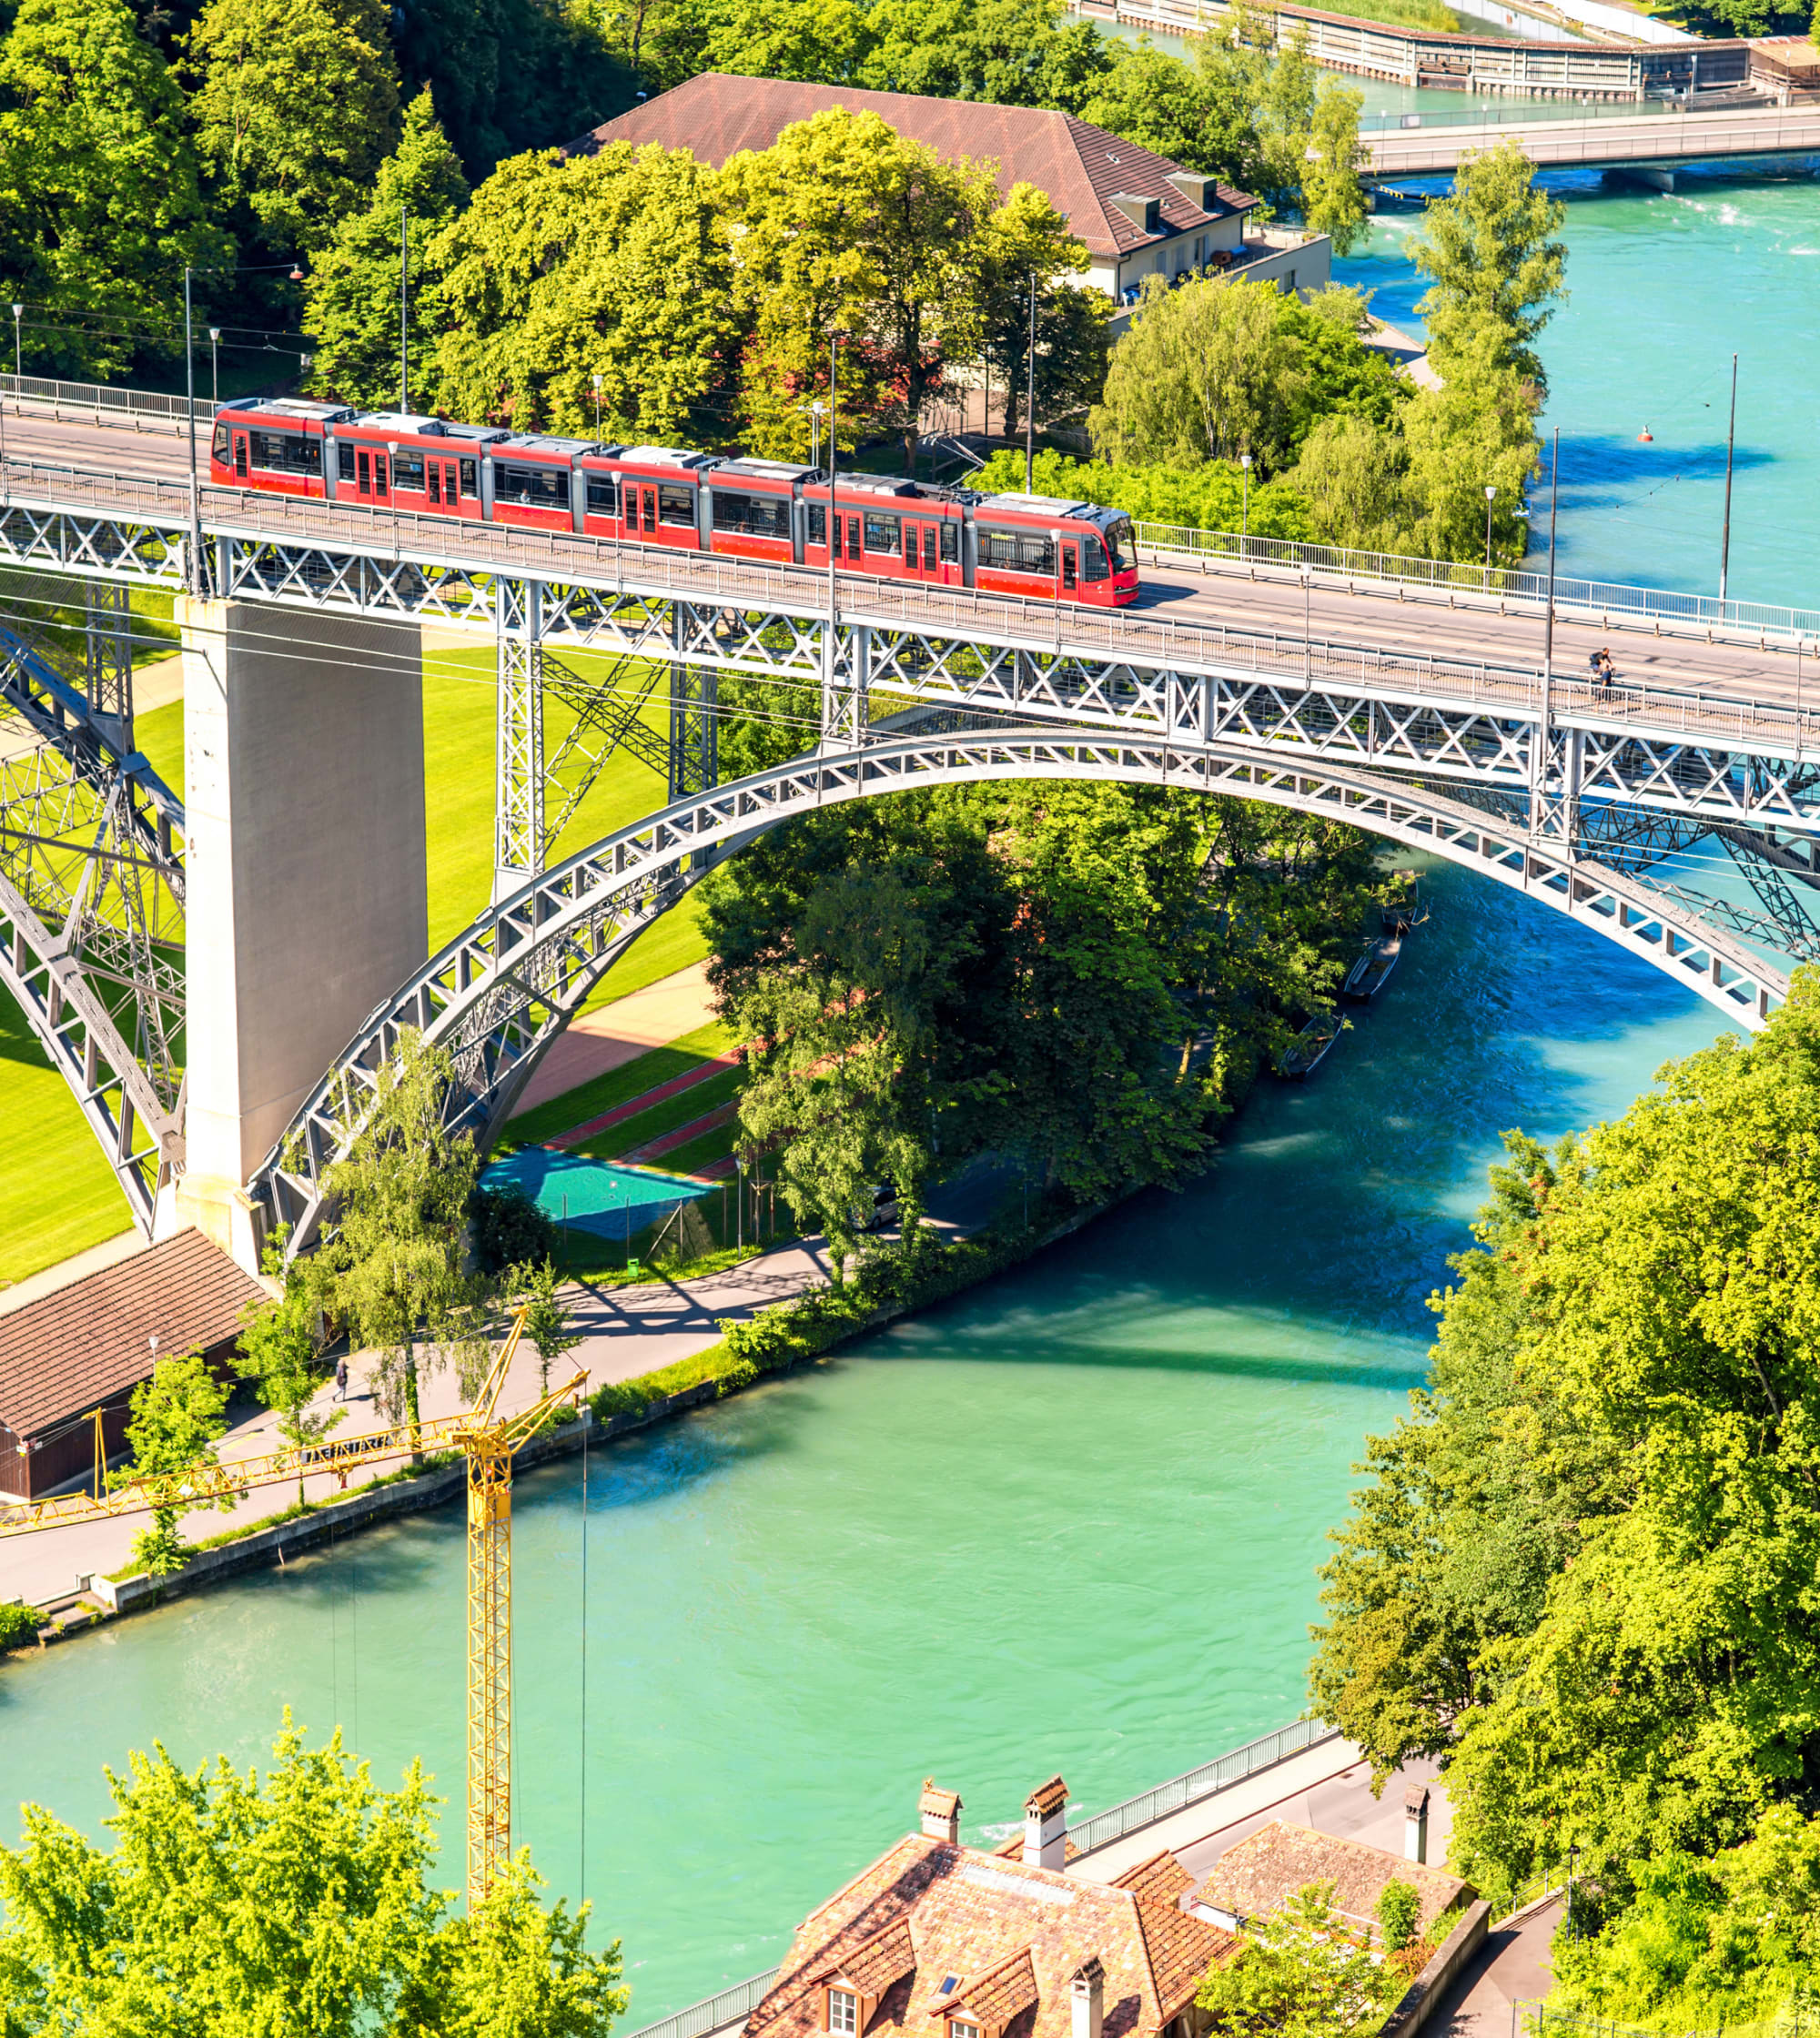 Vogelperspektive auf Kirchenfeldbrücke in Bern, Aare, rotes Tram fährt über die Brücke, Sommer